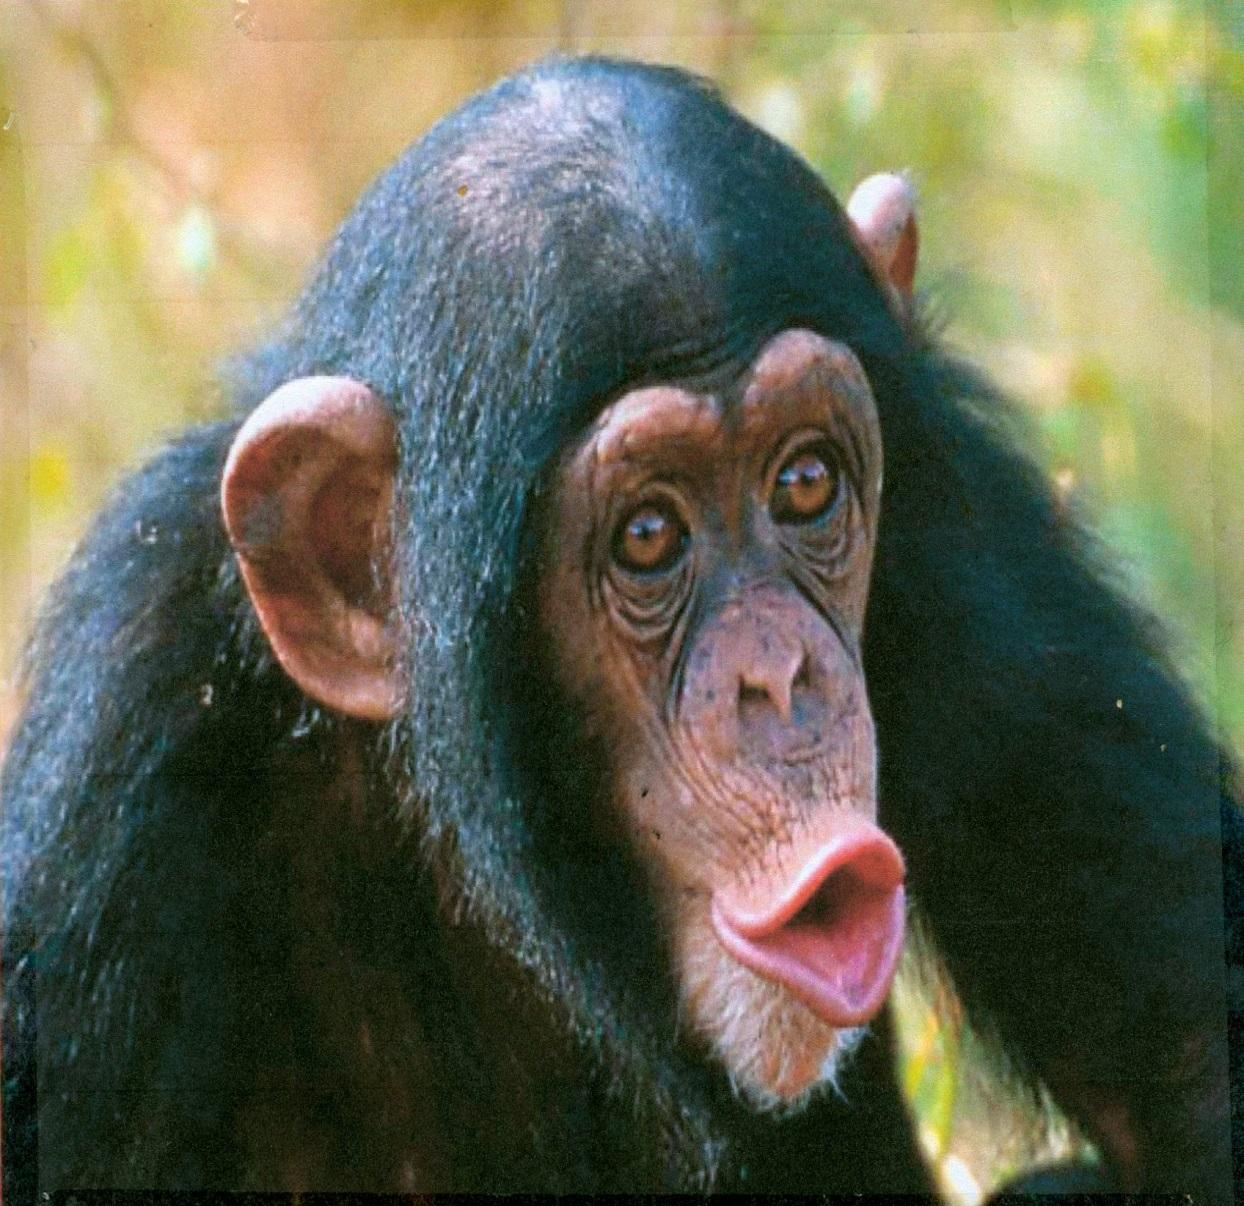 + Ο πίθηκος Οι πίθηκοι είναι ικανότατοι στην αναρρίχηση σε δέντρα.